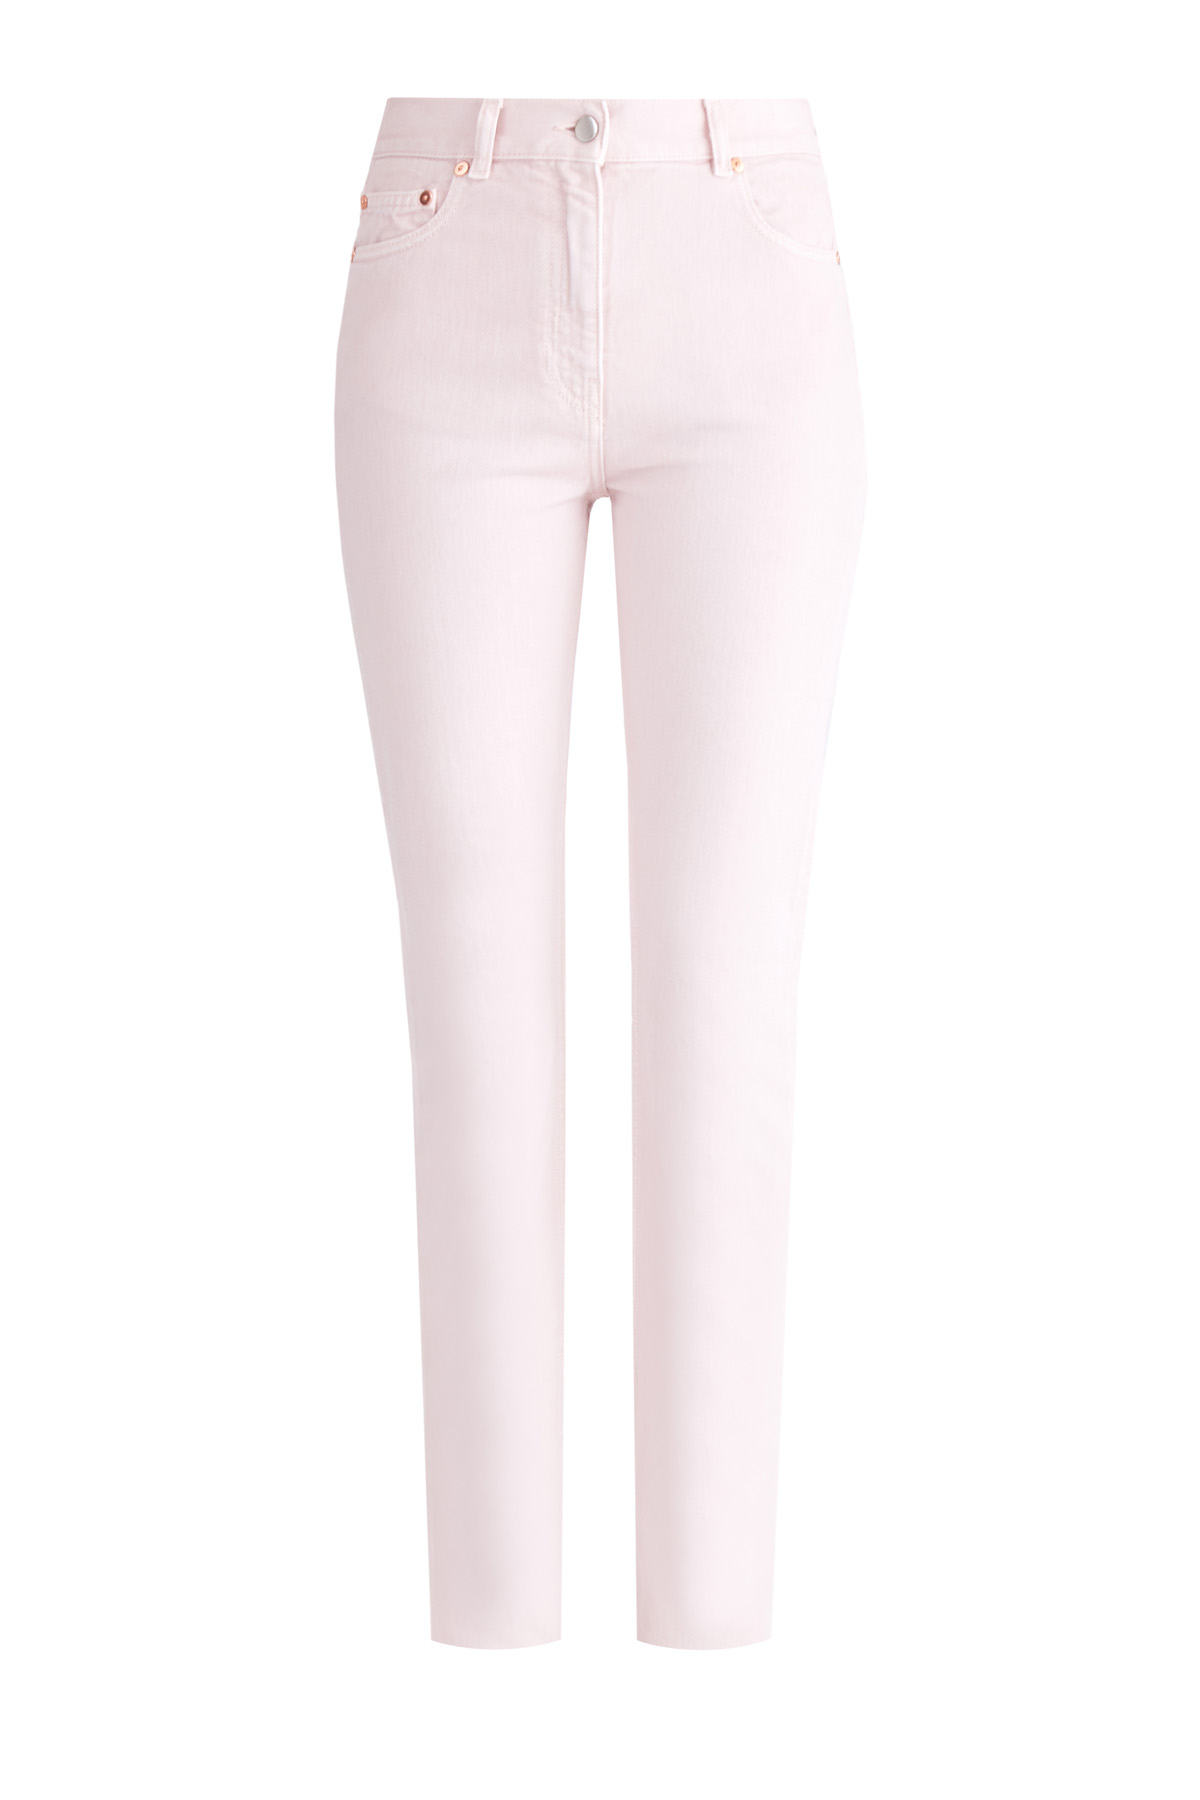 Базовые джинсы-скинни из хлопкового денима розового оттенка